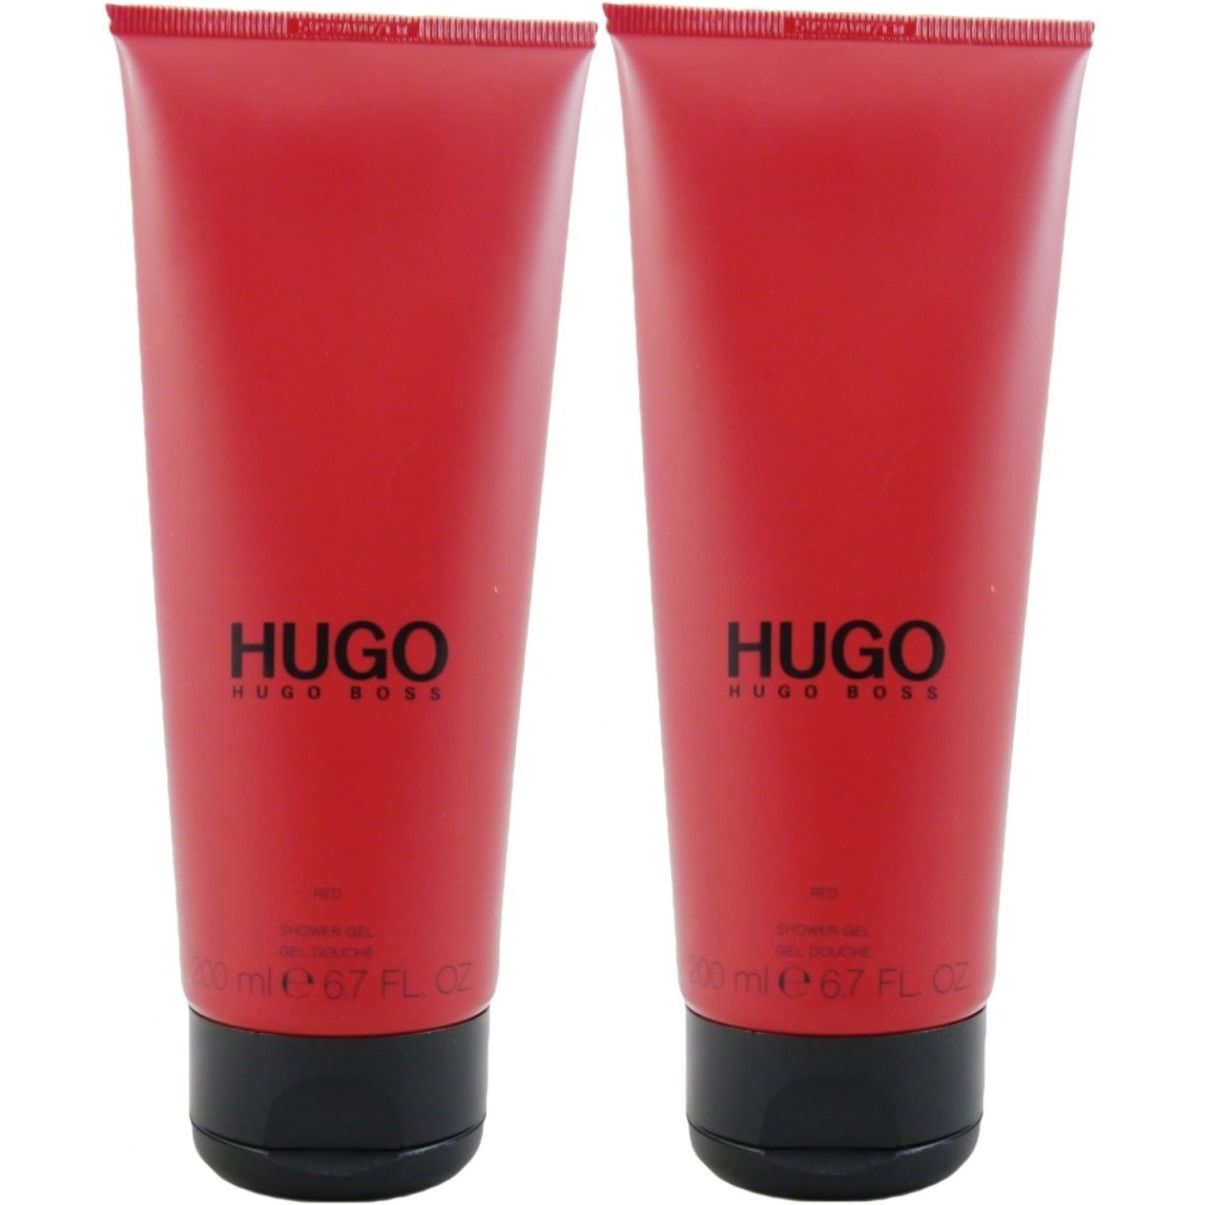 hugo boss red shower gel